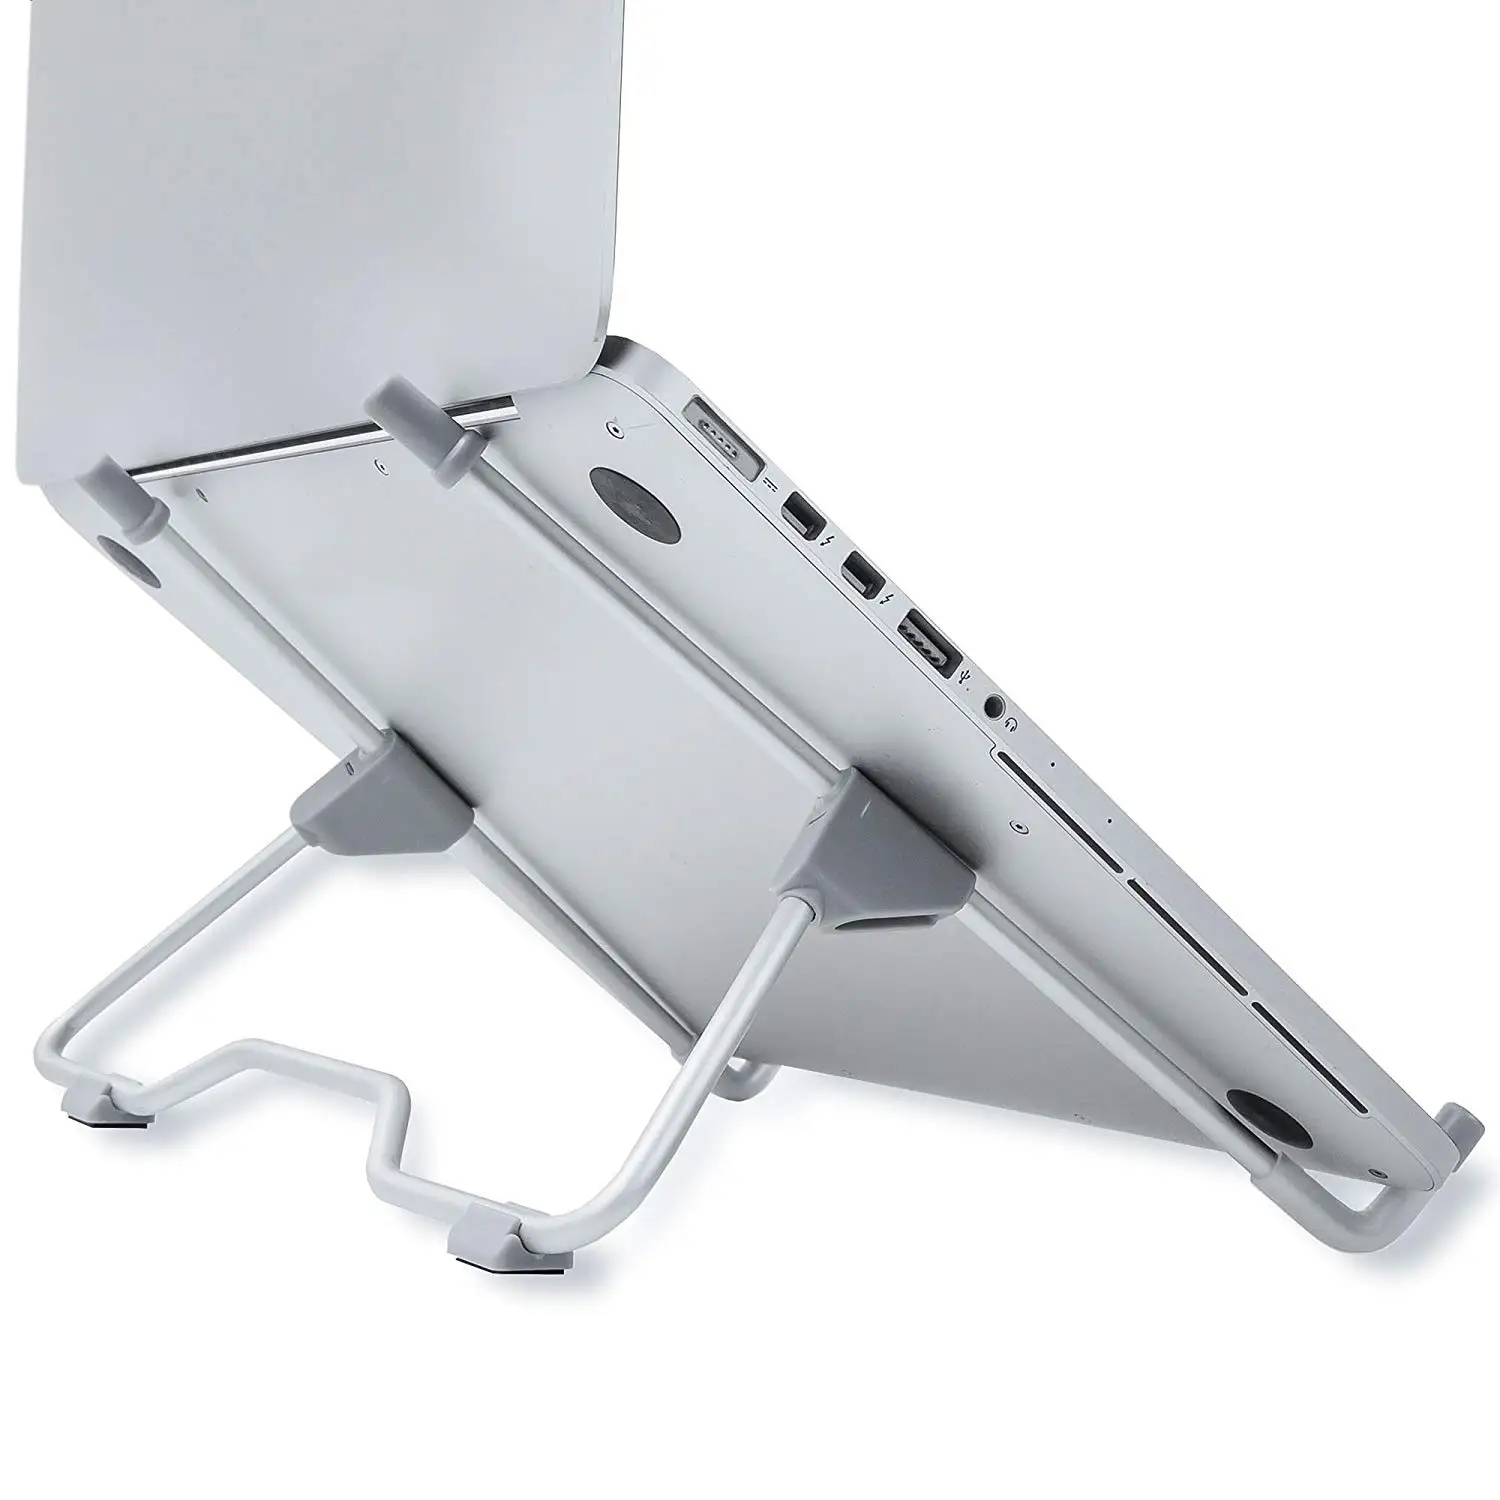 Портативная Регулируемая подставка для ноутбука-складной Эргономичный стояк для дюймов 7-13 дюймов Macbook, ноутбук, для Ipad, планшет